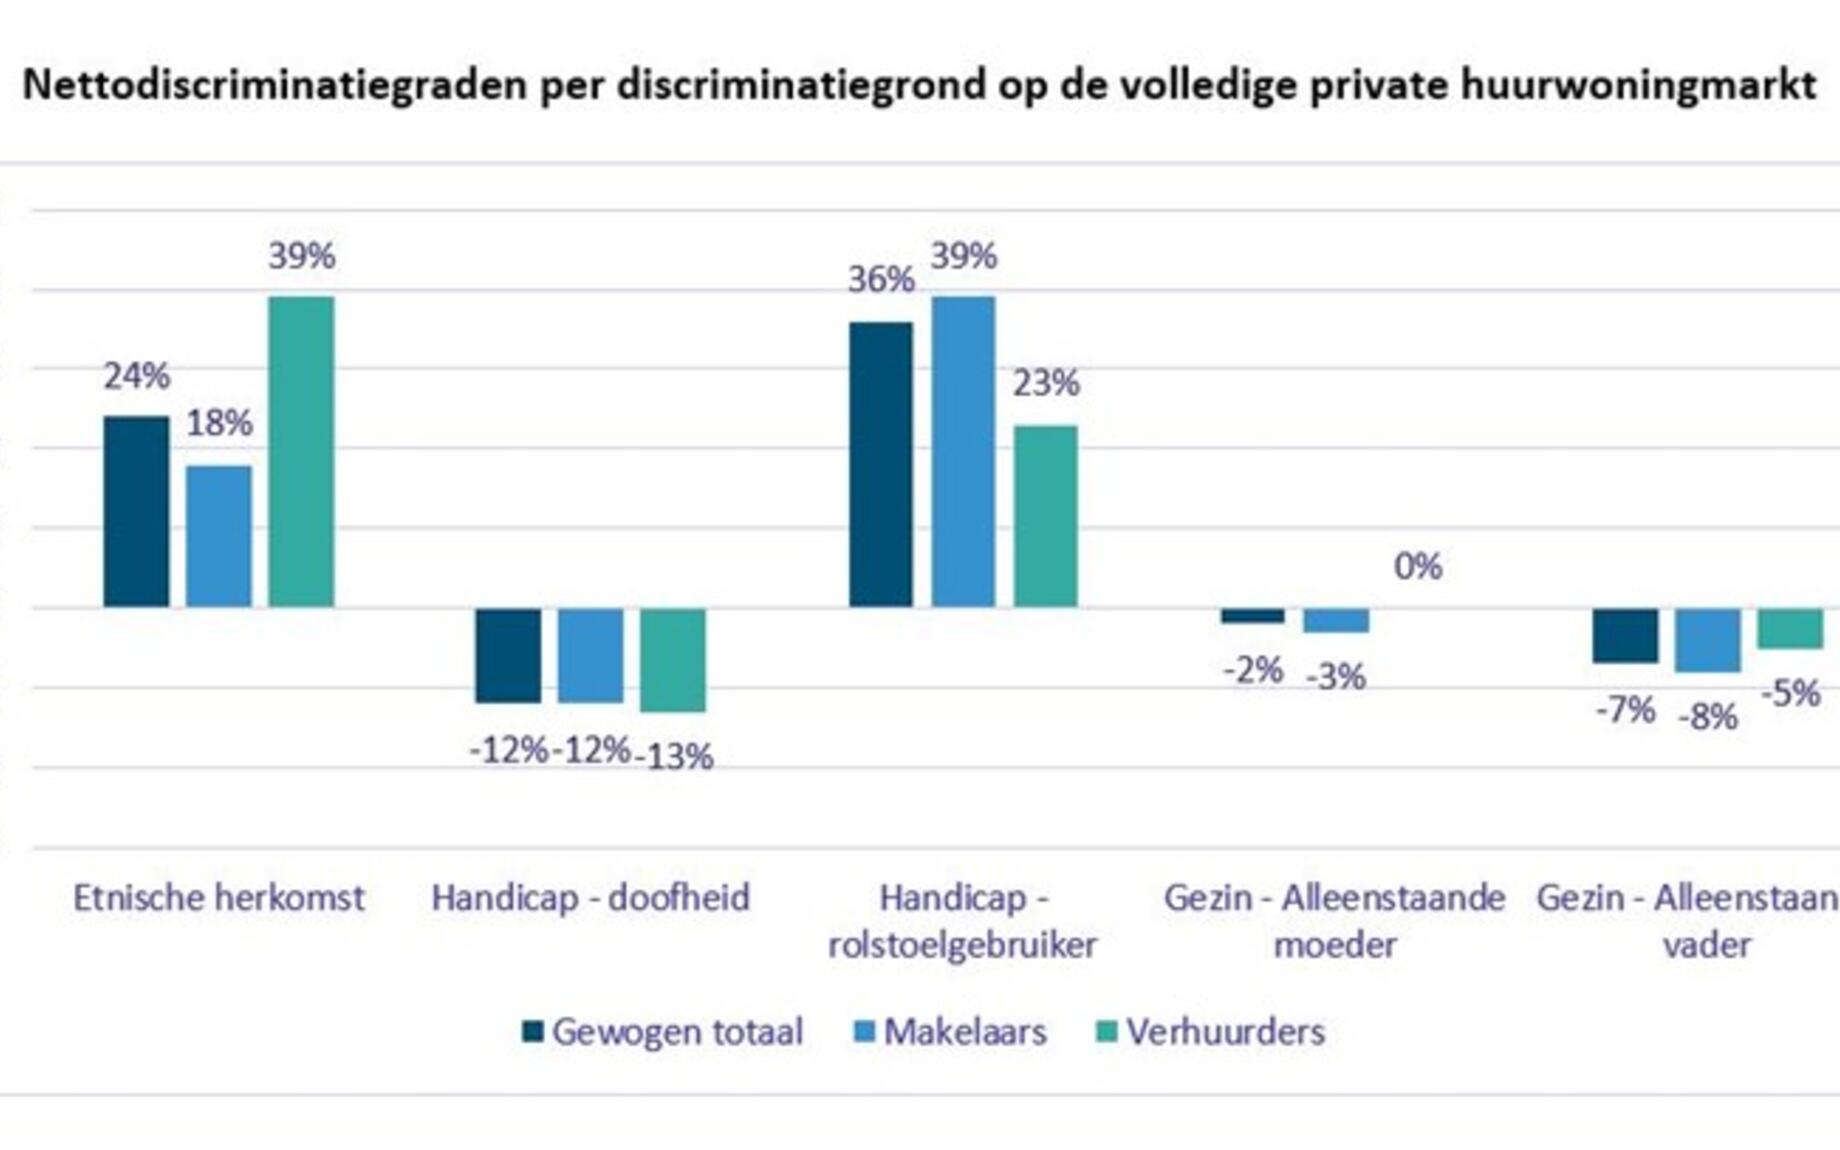 Nettodiscriminatiegraden per discriminatiegrond op de volledige private huurwoningmarkt